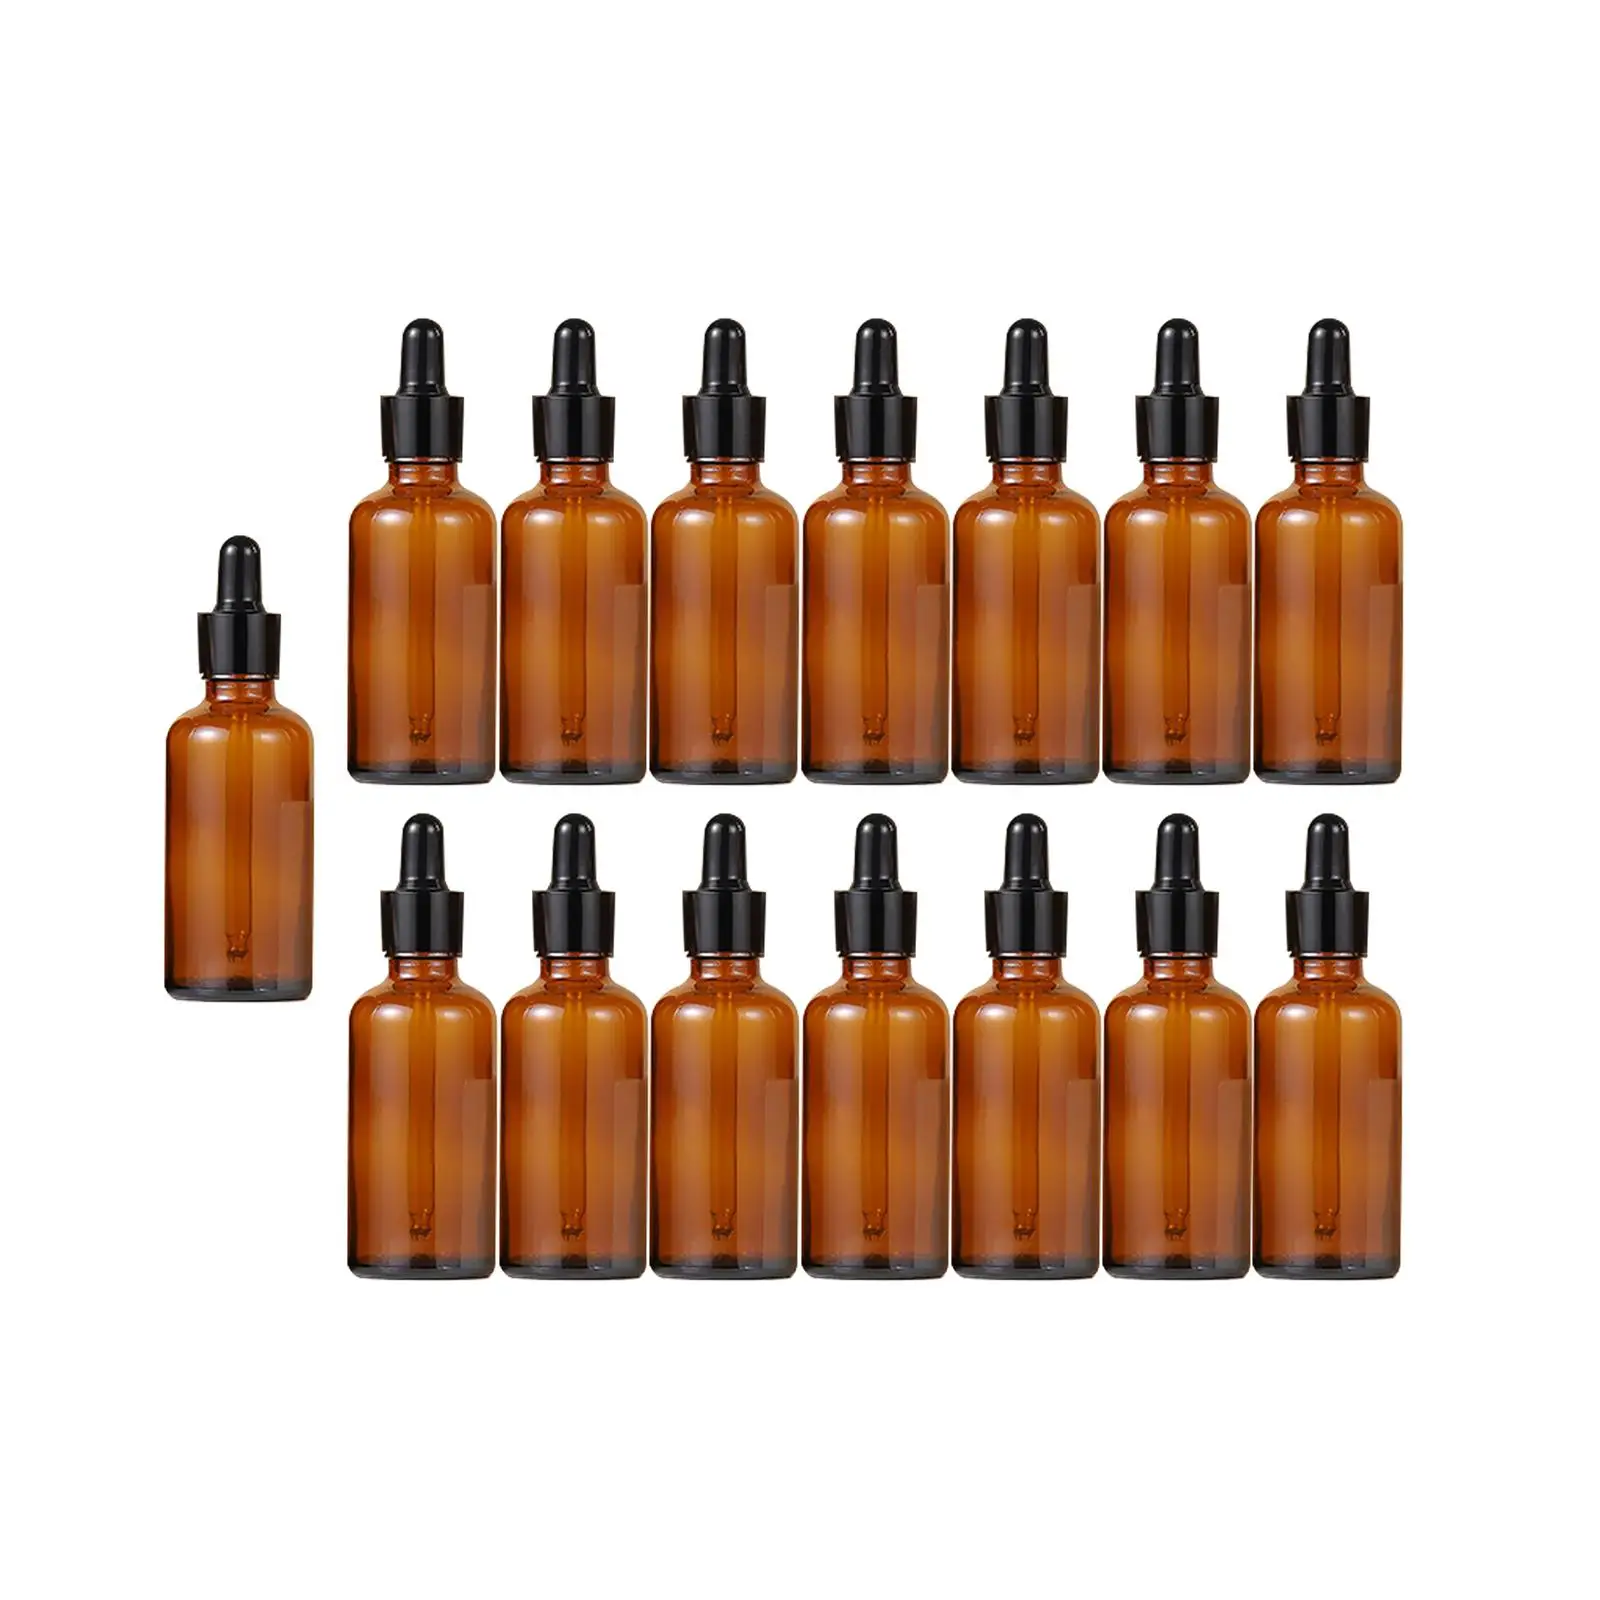 15Pcs Dropper Bottles Refillable Portable Thick Storage for Essential Oils Liquids 30ml Durable Travel Bottles Tincture Bottles